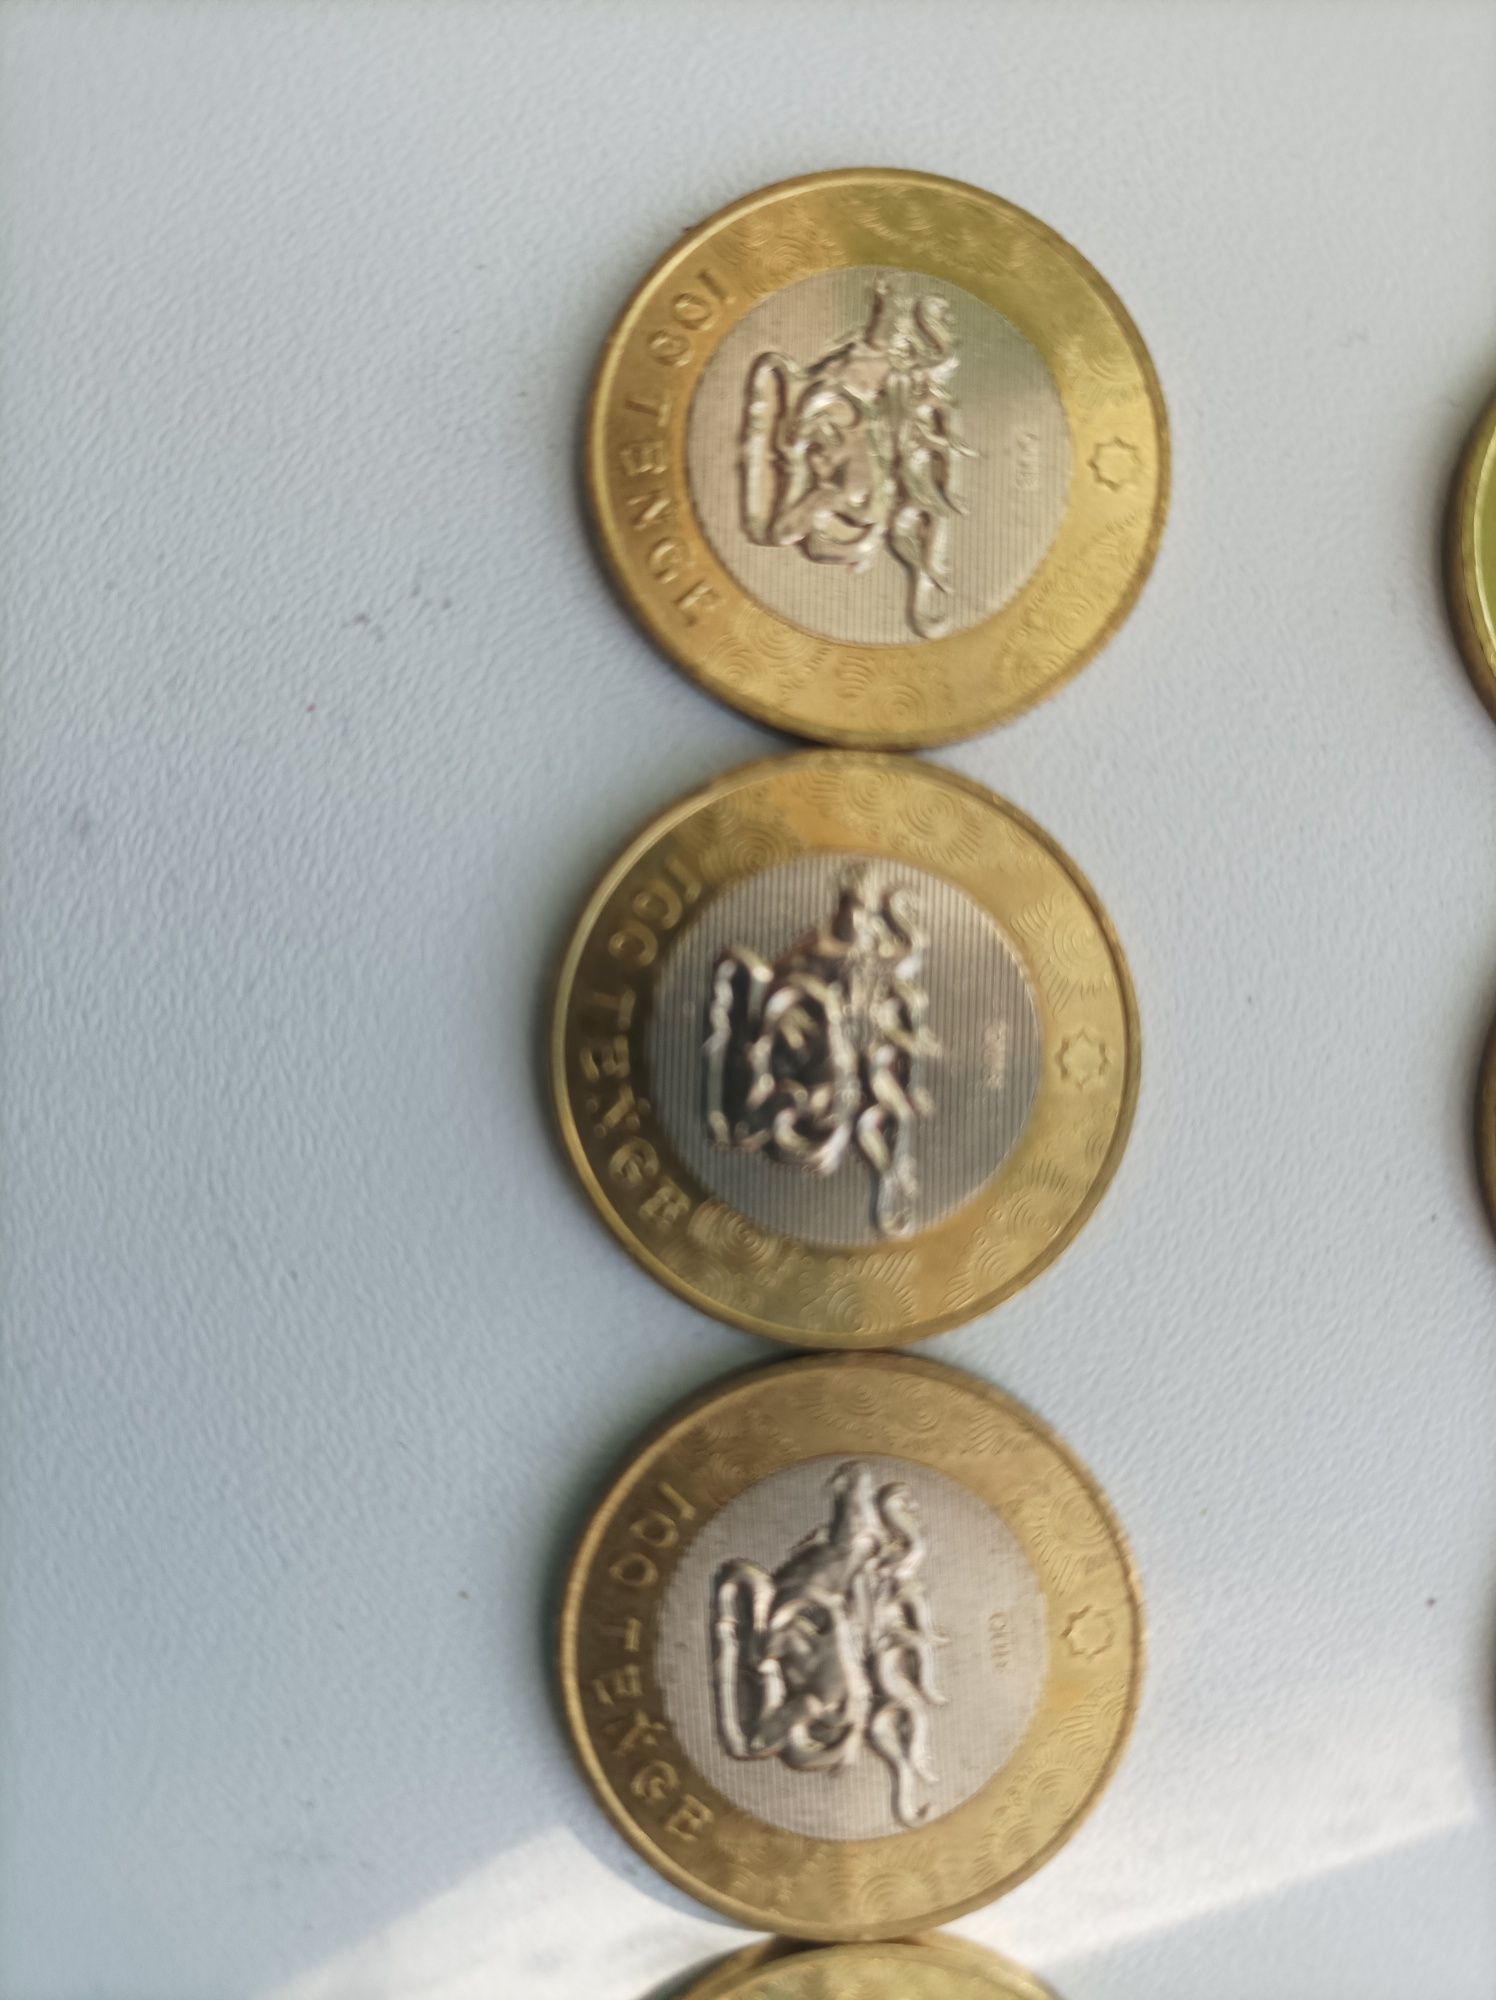 Монеты 100 тенге